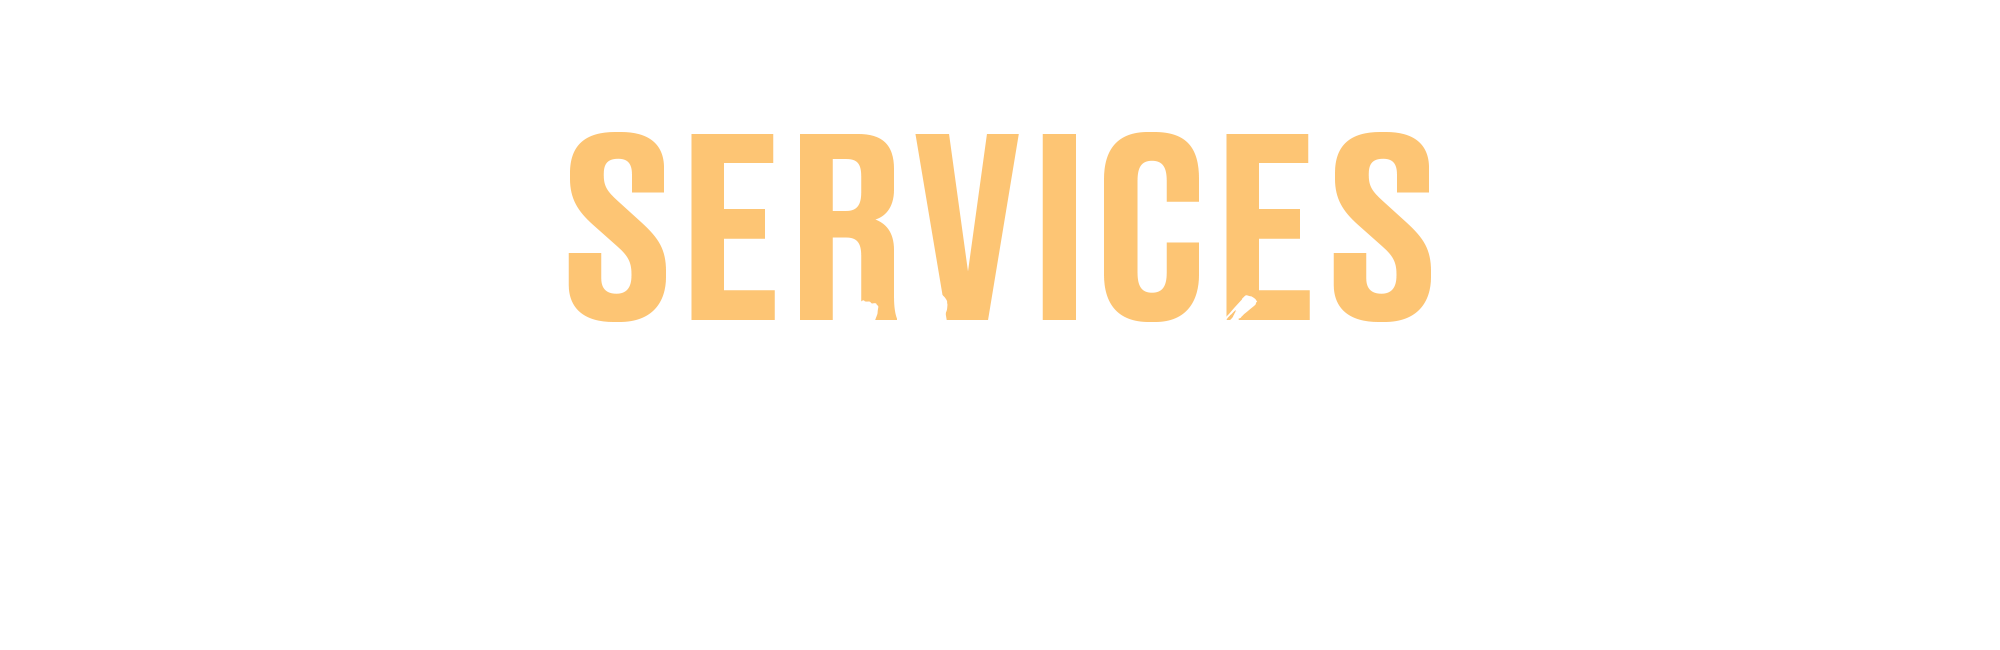 Services in November